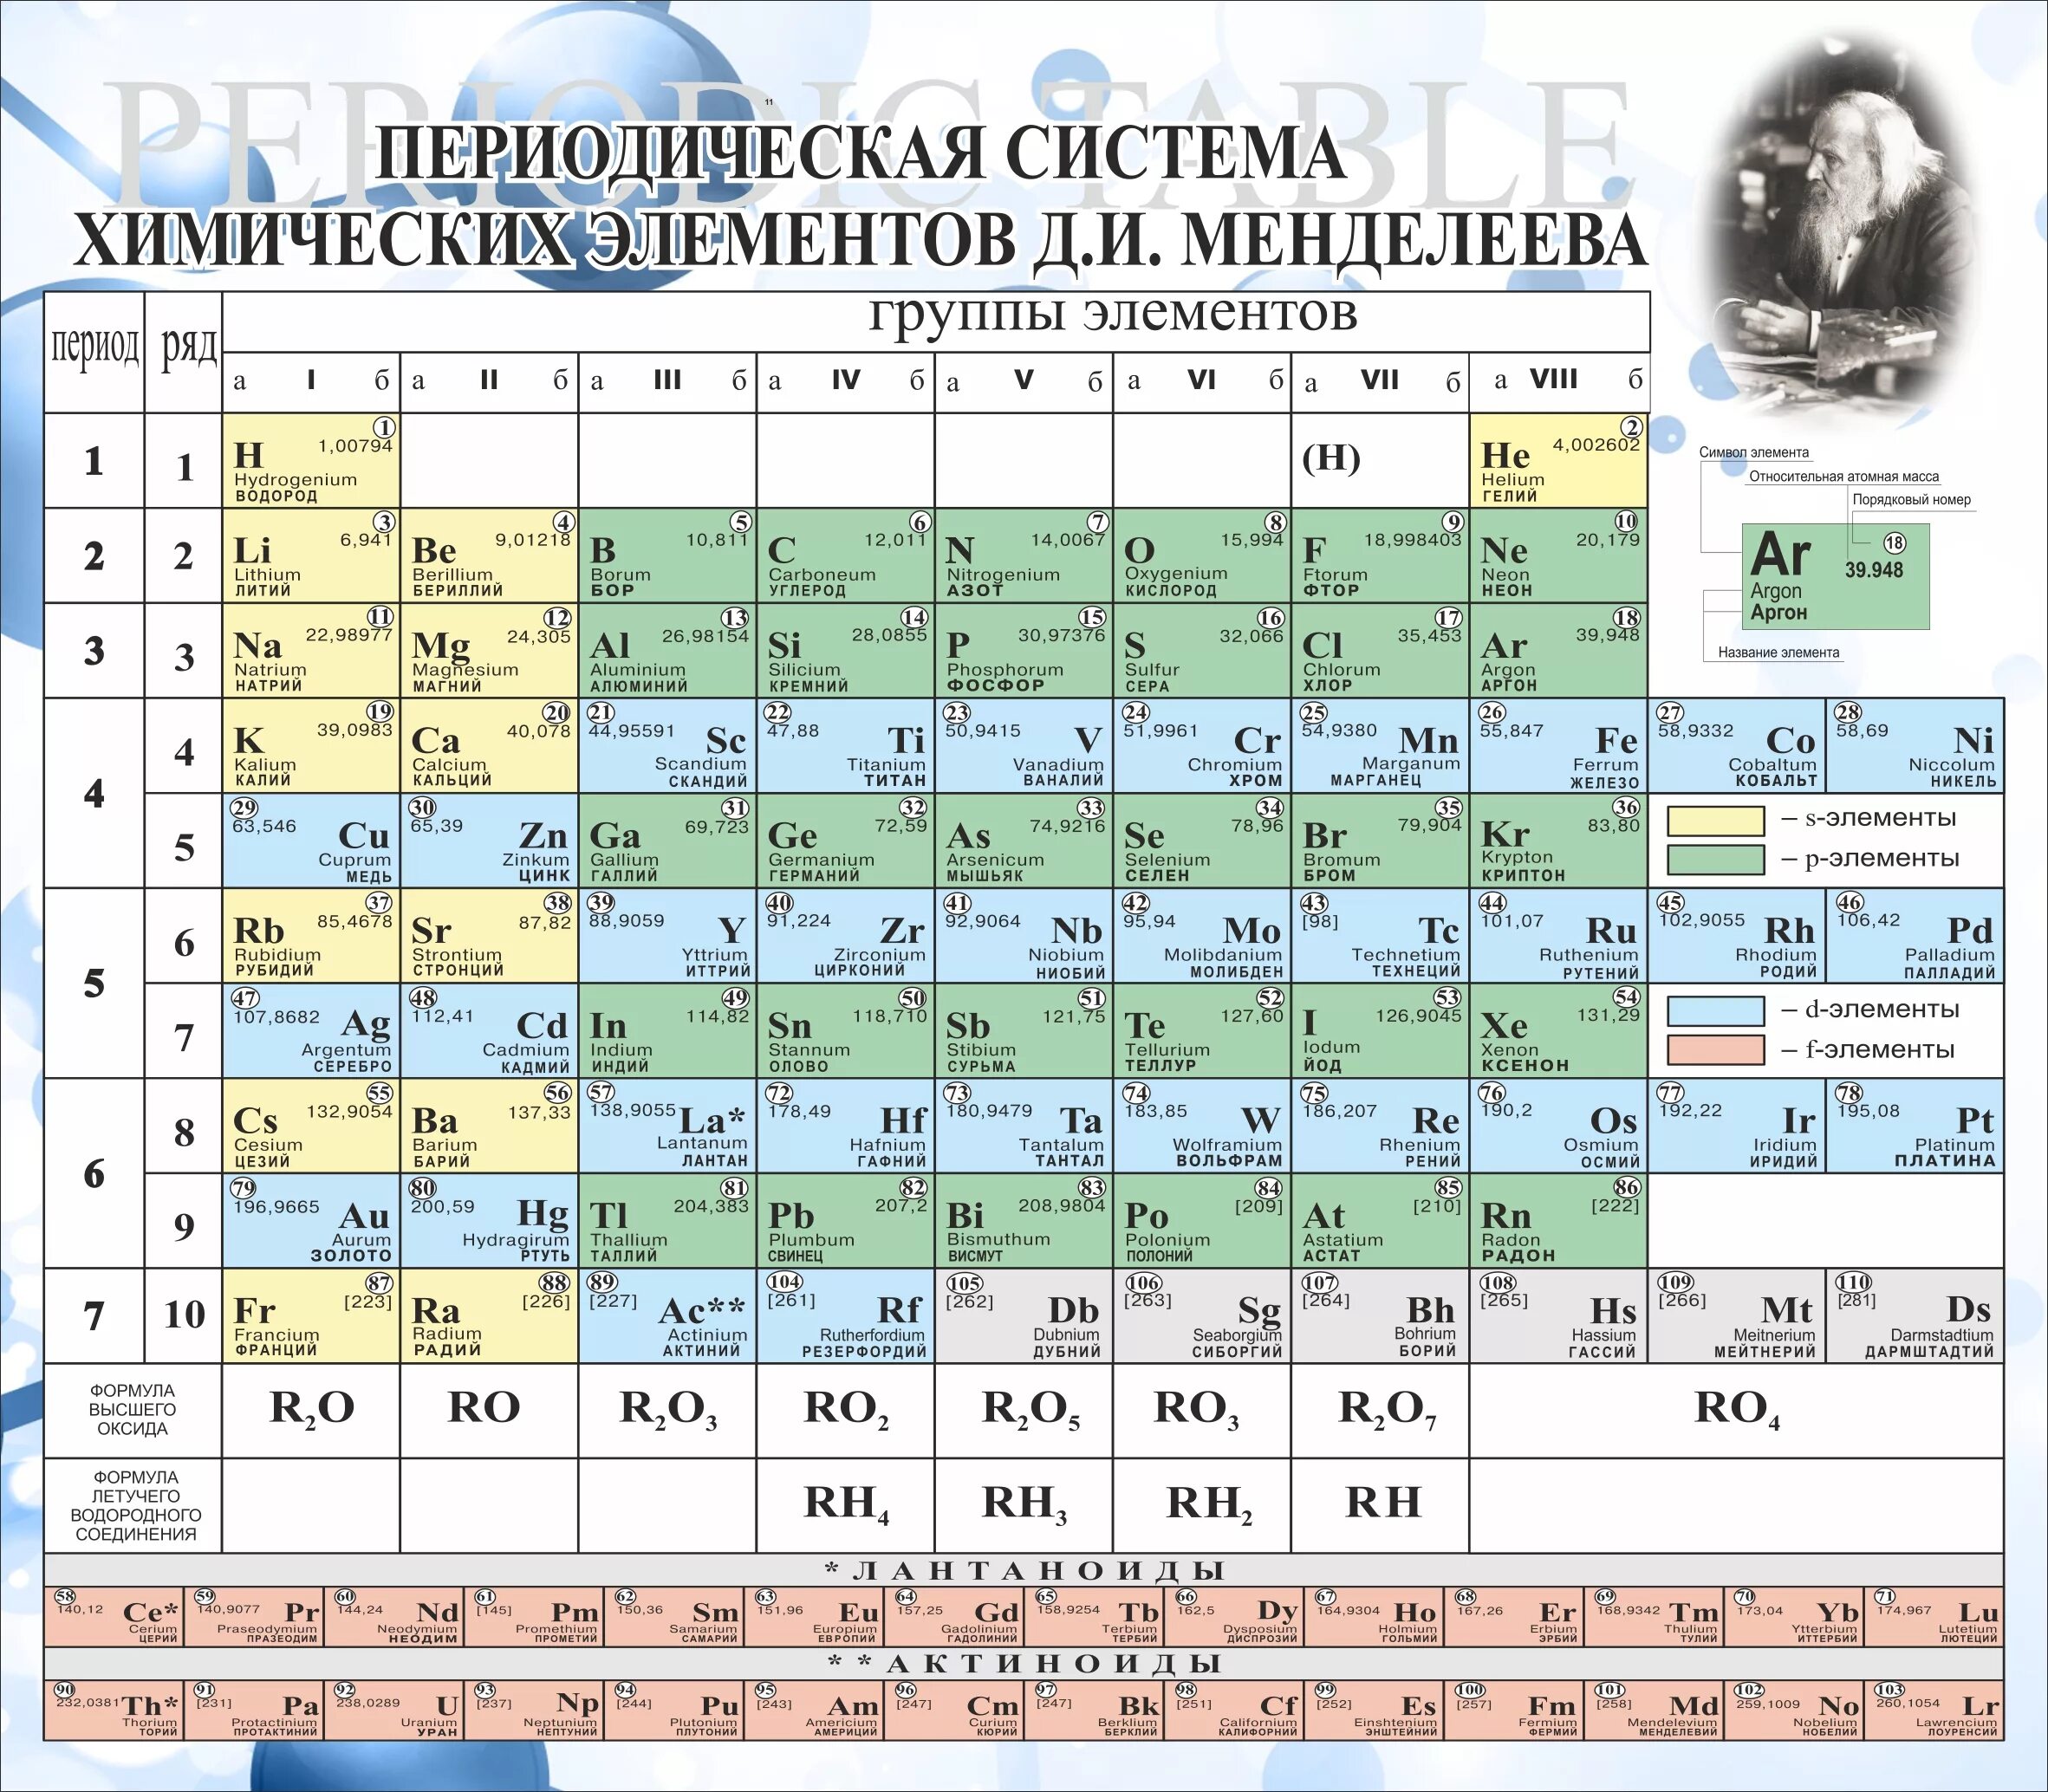 Rn какой химический элемент. Таблица Менделеева с названиями химических элементов. Произношение хим элементов таблица Менделеева. Периодическая система химических элементов Менделеева 118 элементов. 20 Элемент таблицы Менделеева.